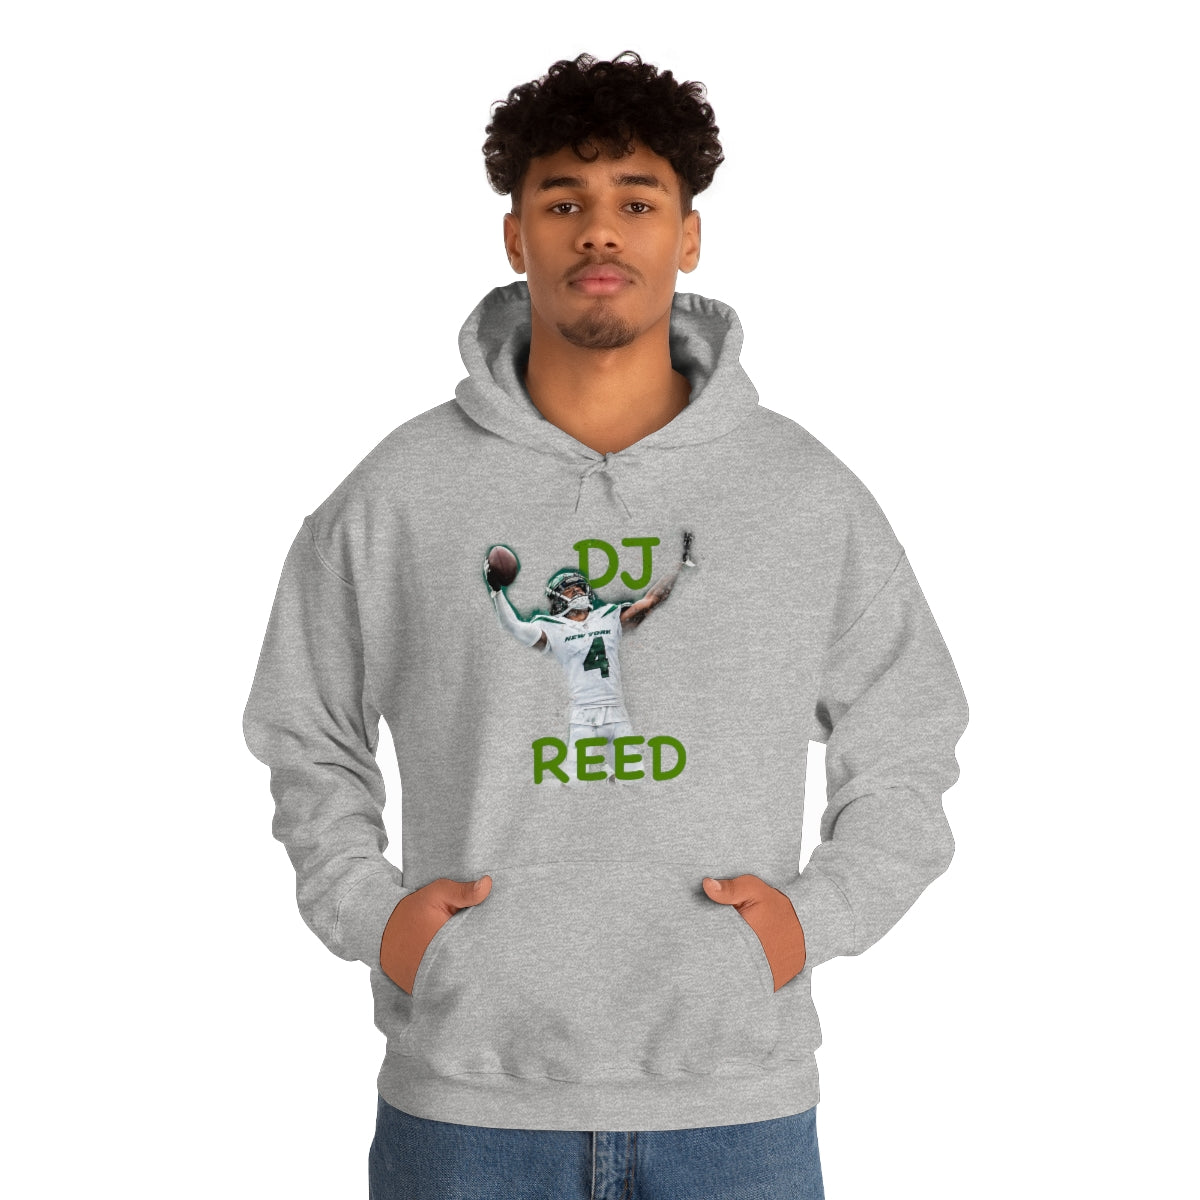 DJ REED Hooded Sweatshirt - IsGoodBrand